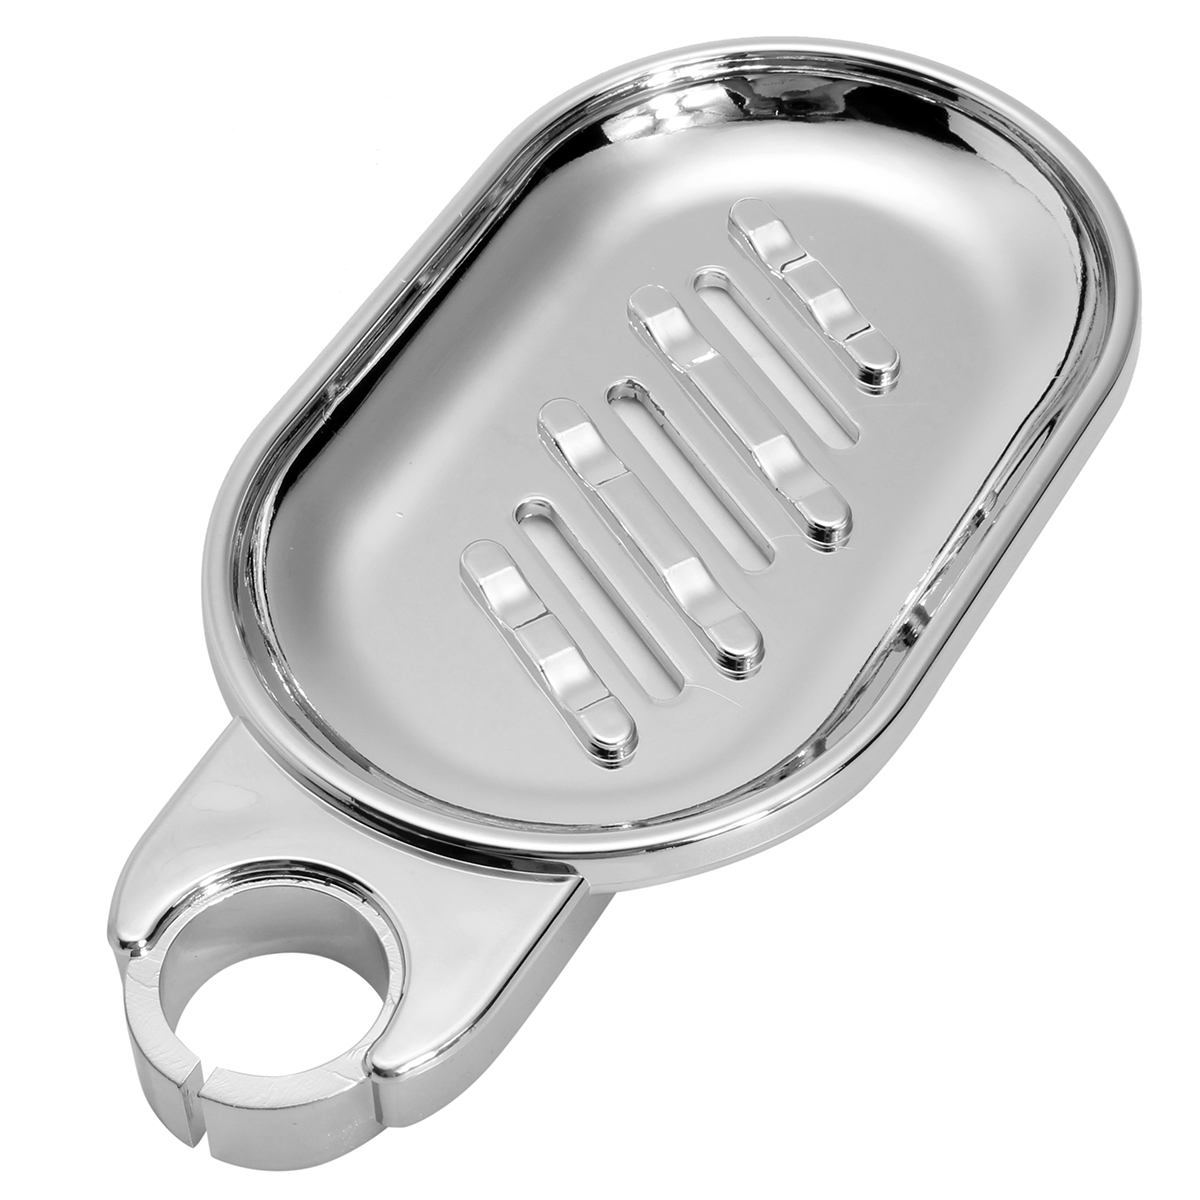 Soap-Dish-Adjustable-Shower-Rail-Slide-Soap-Plates-Smooth-Bathroom-Holder-1211173